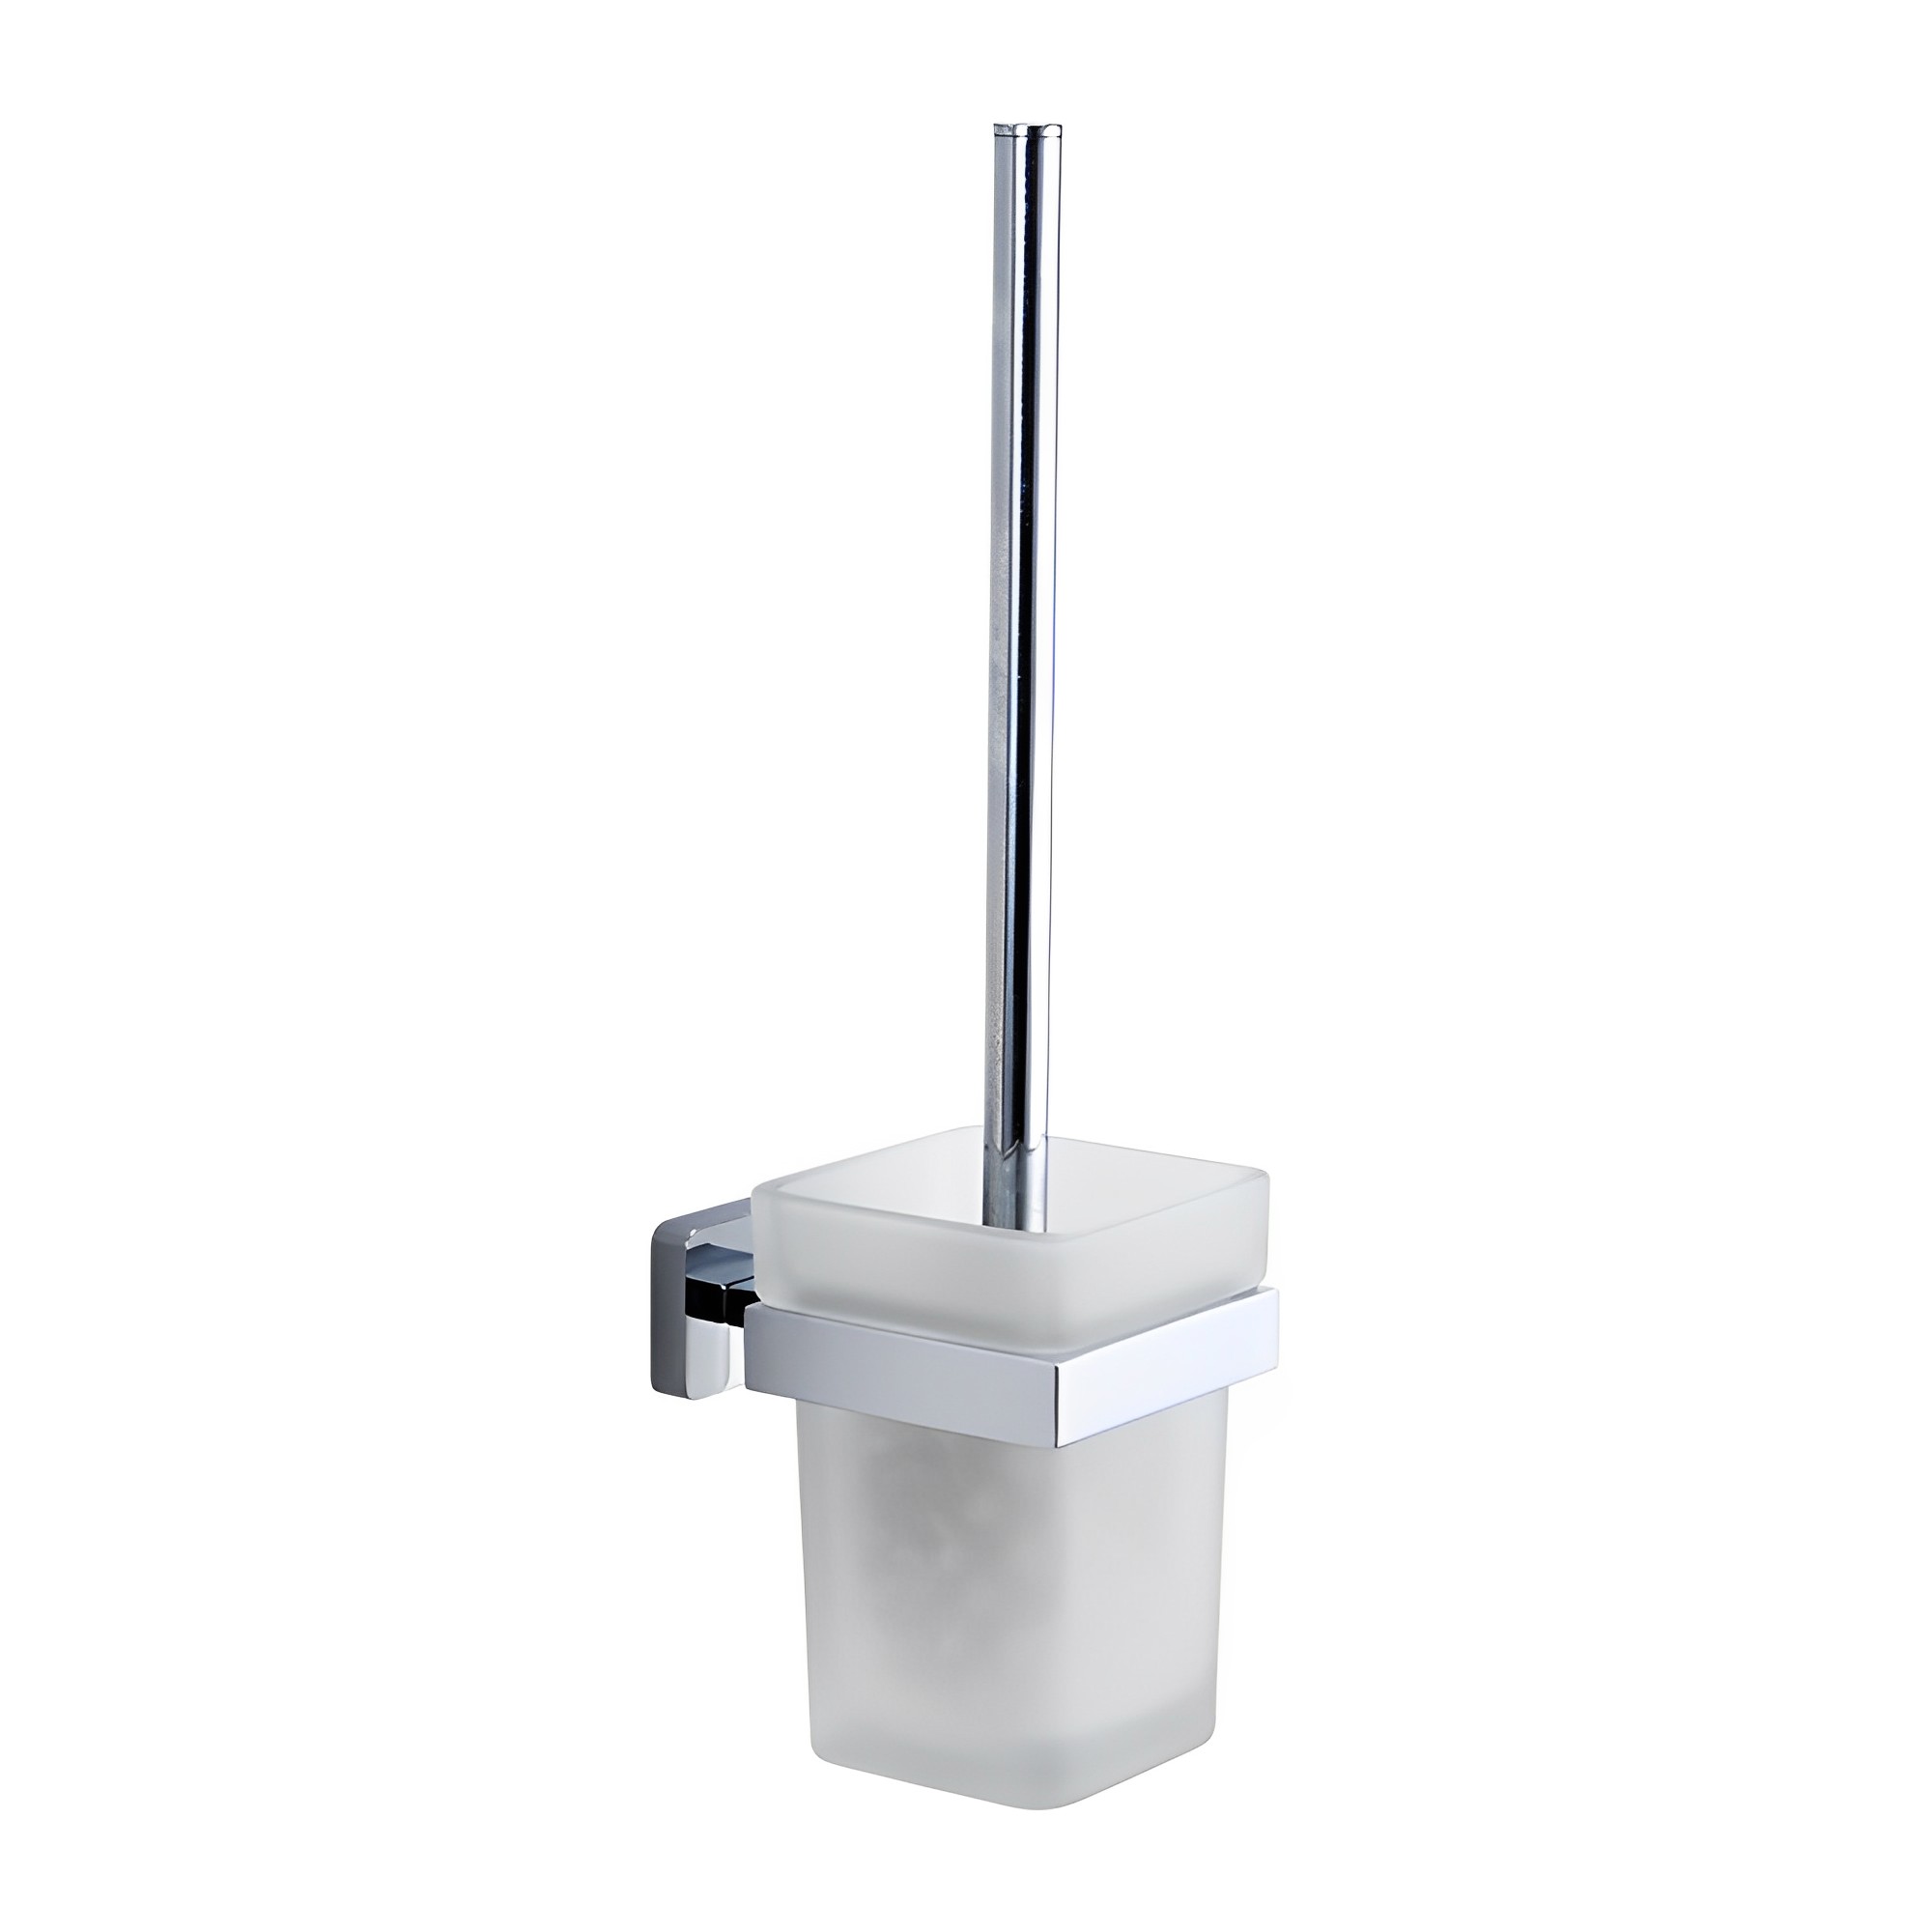 Suporte para escova de vaso sanitário OJ-G1119L cromado montado na parede com recipiente de vidro acessórios de banheiro de liga de zinco